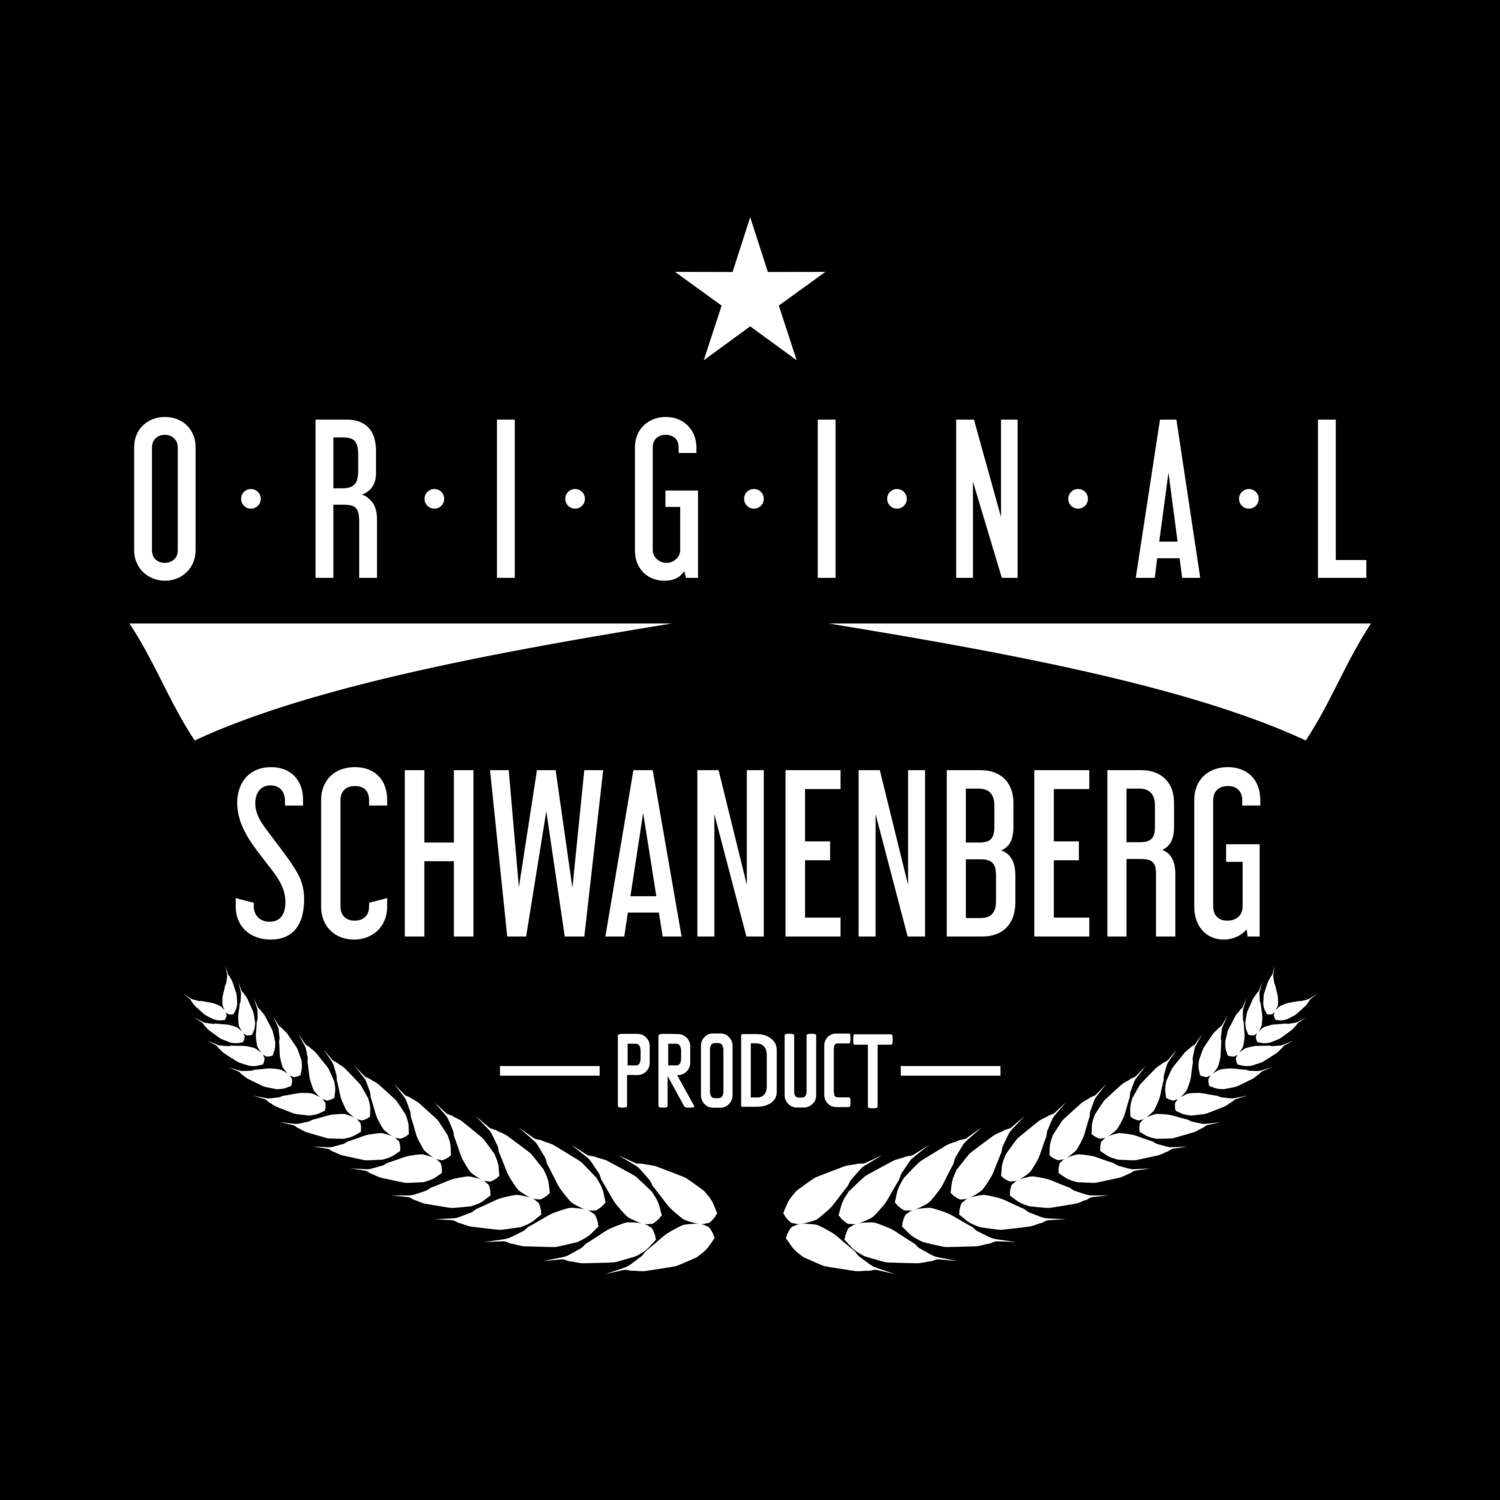 Schwanenberg T-Shirt »Original Product«